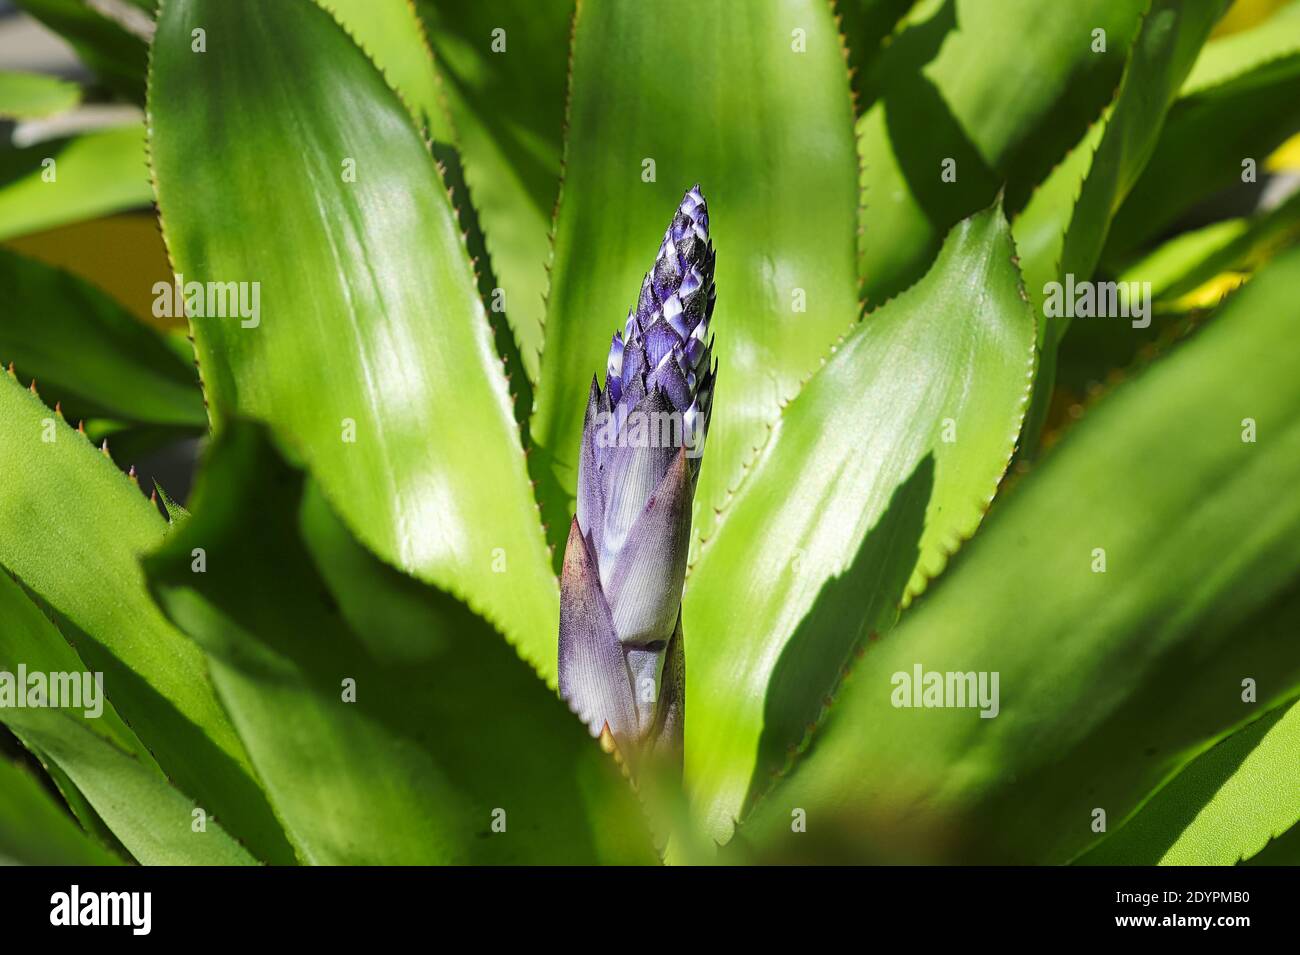 A blossom spike growing on an aechmea. Stock Photo